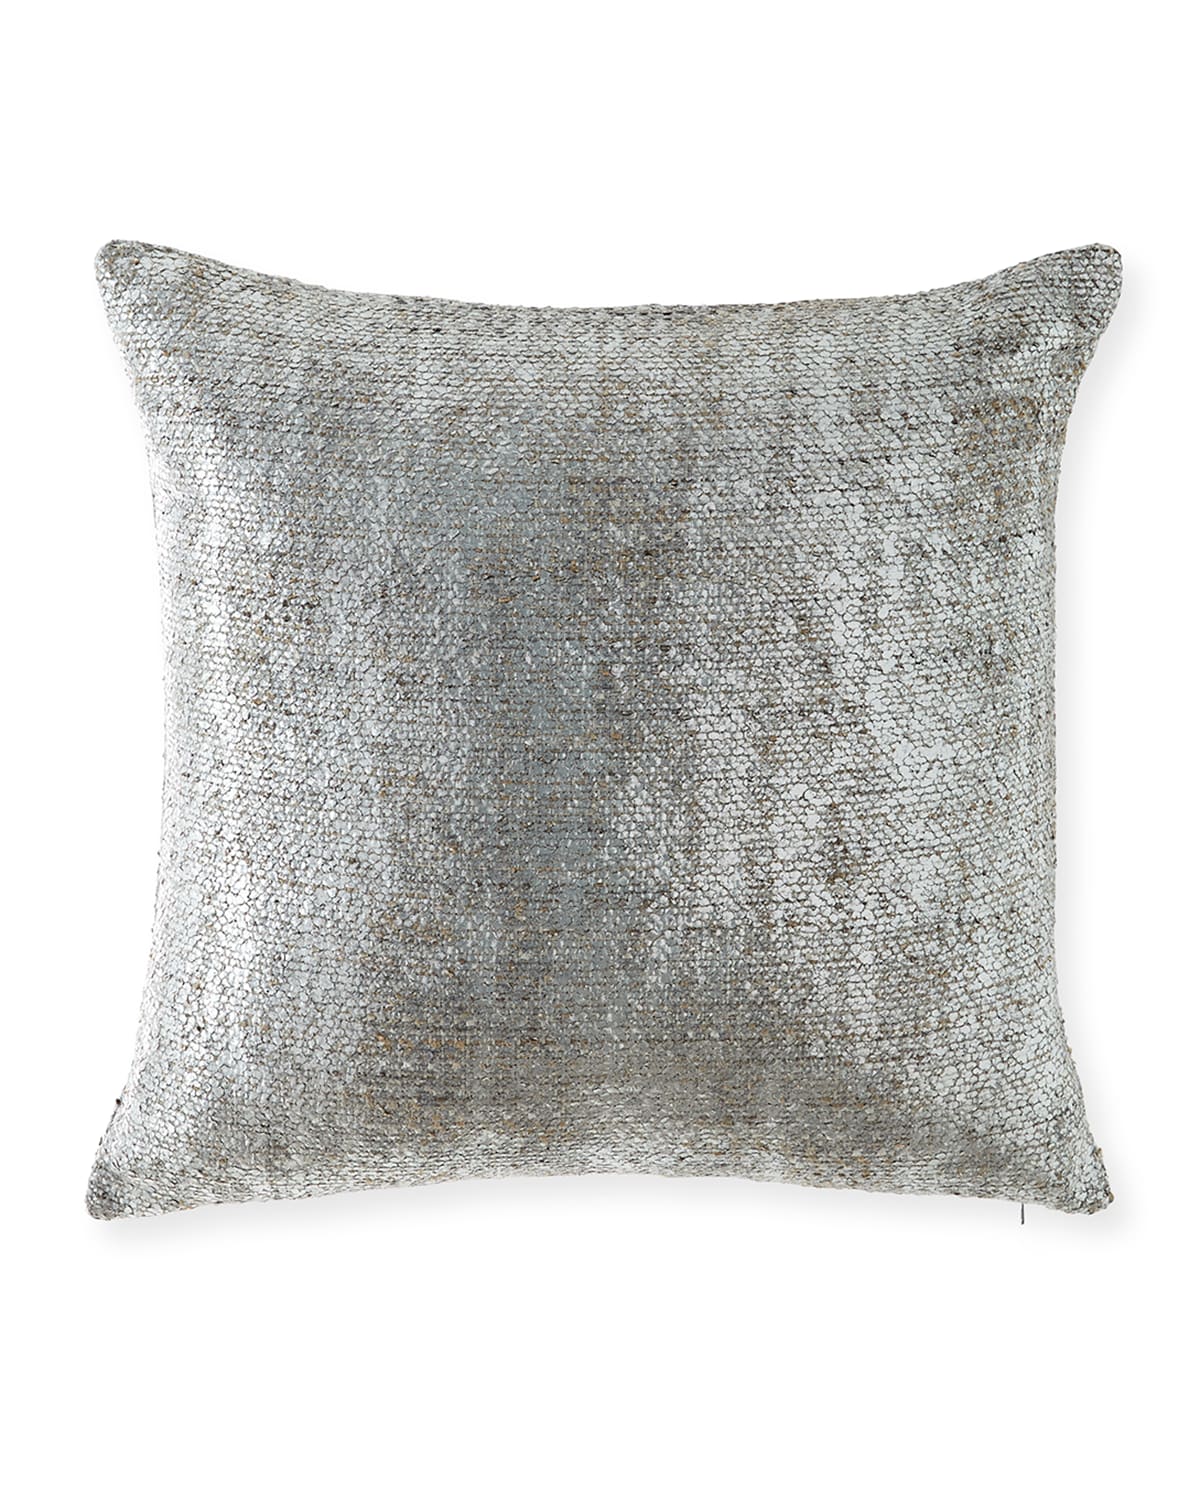 Shop Eastern Accents Hebrides Decorative Pillow